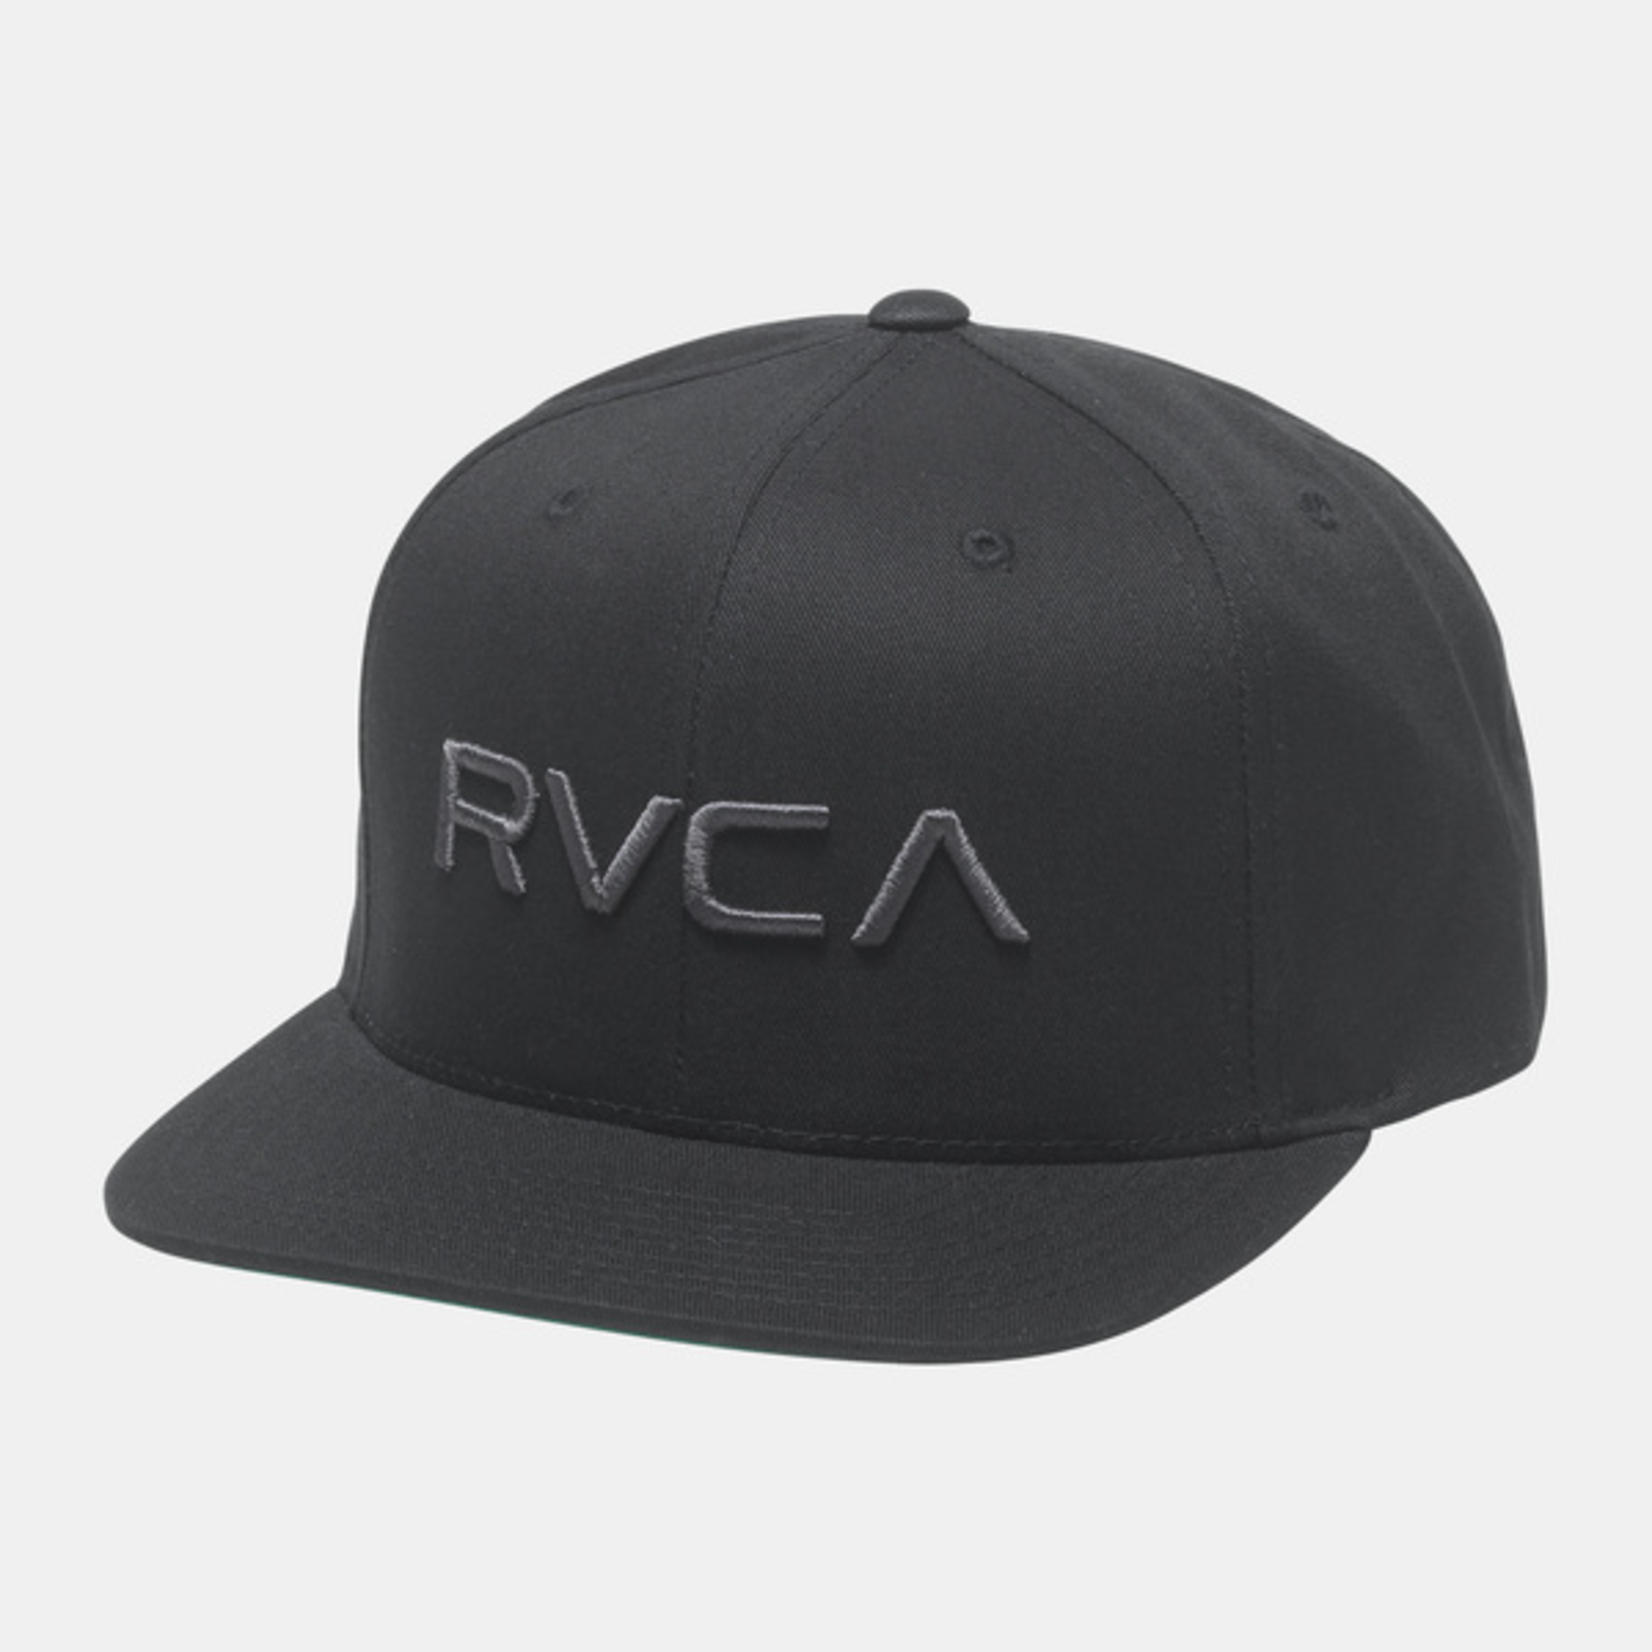 RVCA MEN'S RVCA TWILL SNAPBACK II BLACK/CHARCOAL